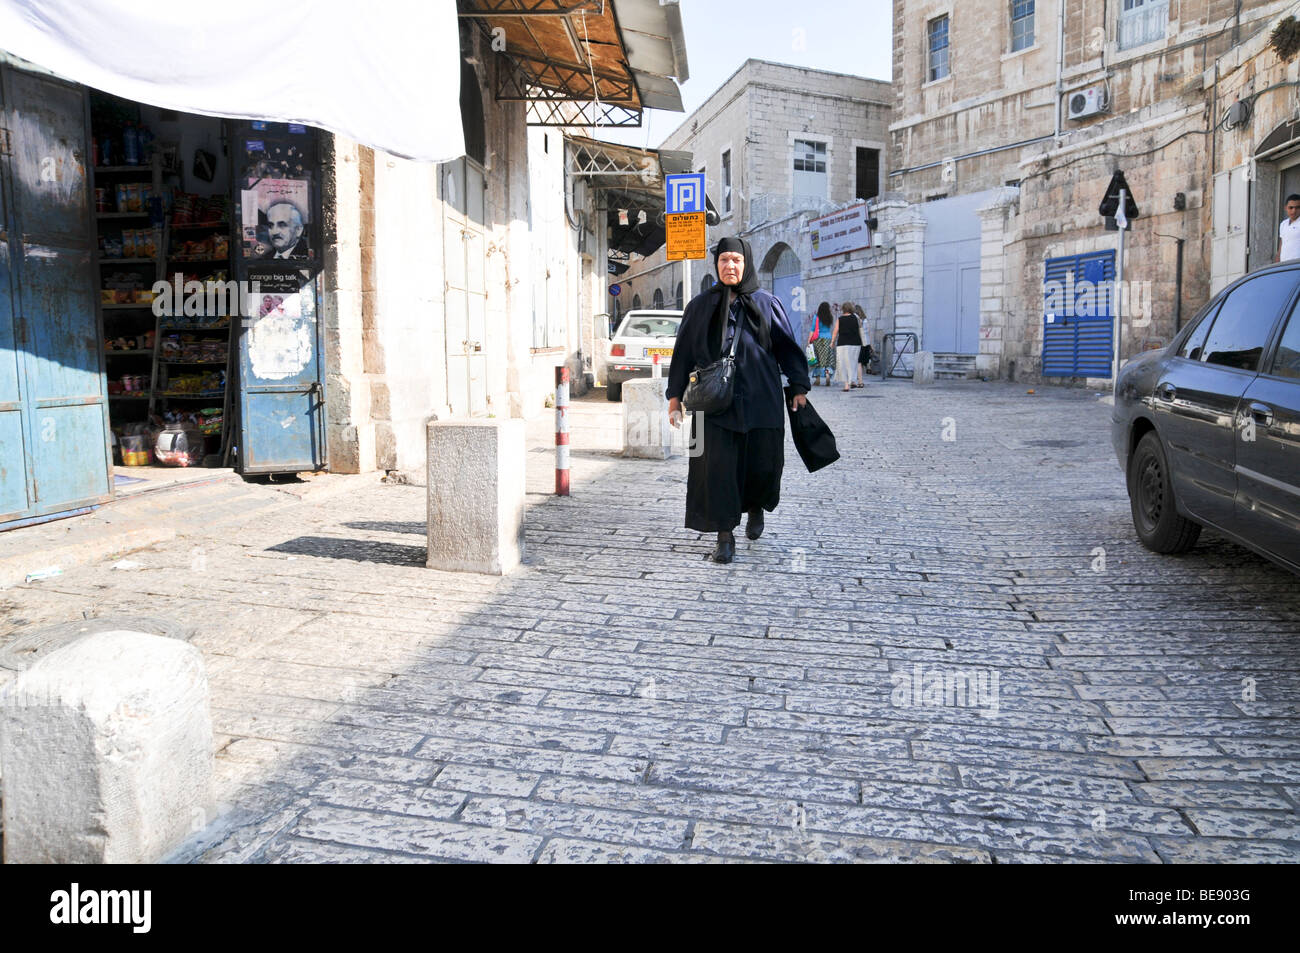 Israel, Jerusalem, Arab woman walks in an alley Stock Photo